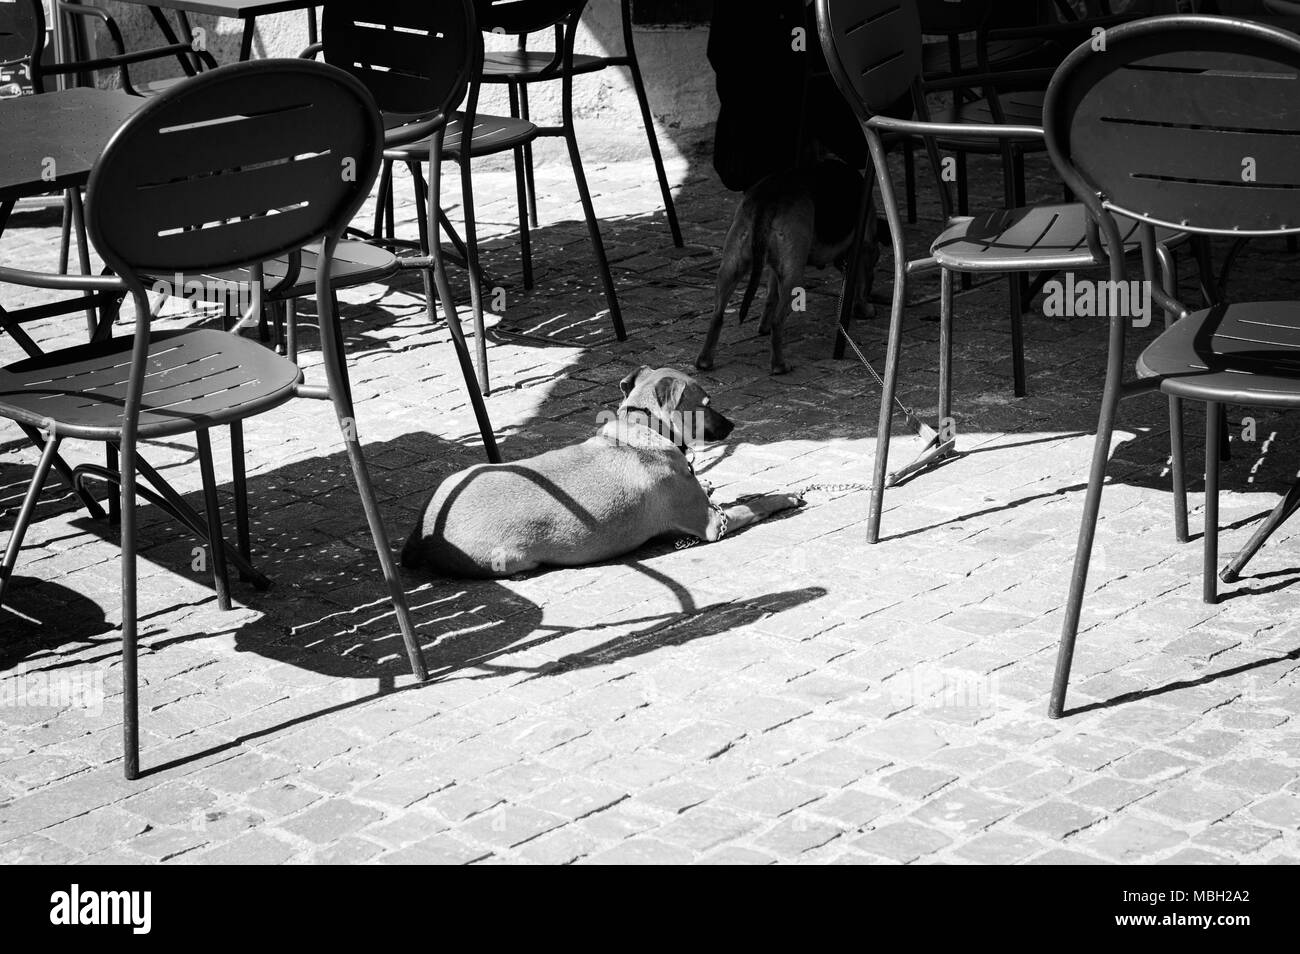 Cani isolato in un bar nei pressi di sedie (Spello Umbria Italia Foto stock  - Alamy